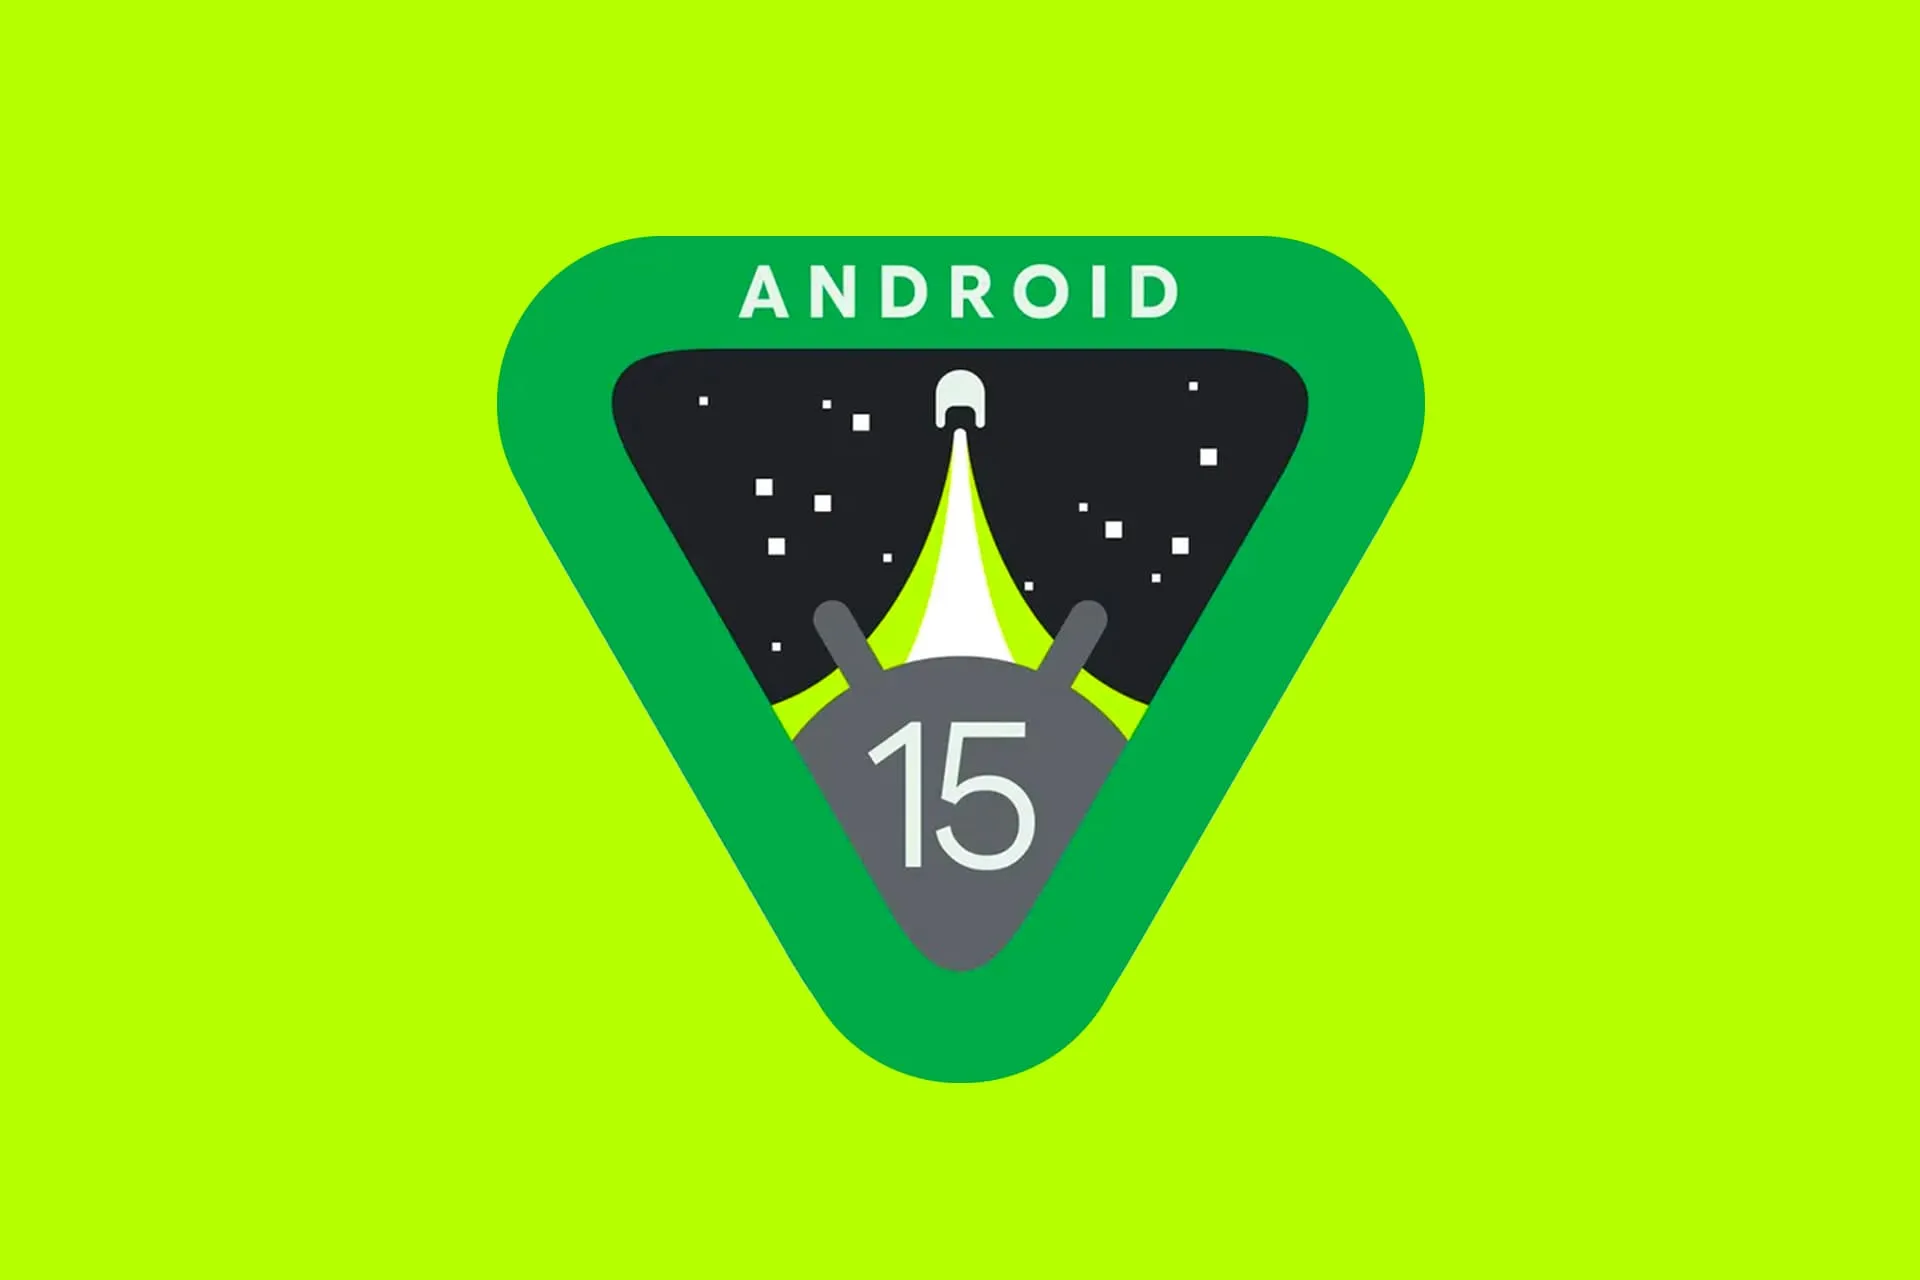 لوگو اندروید ۱۵ گوگل / Android 15 پس زمینه سبز